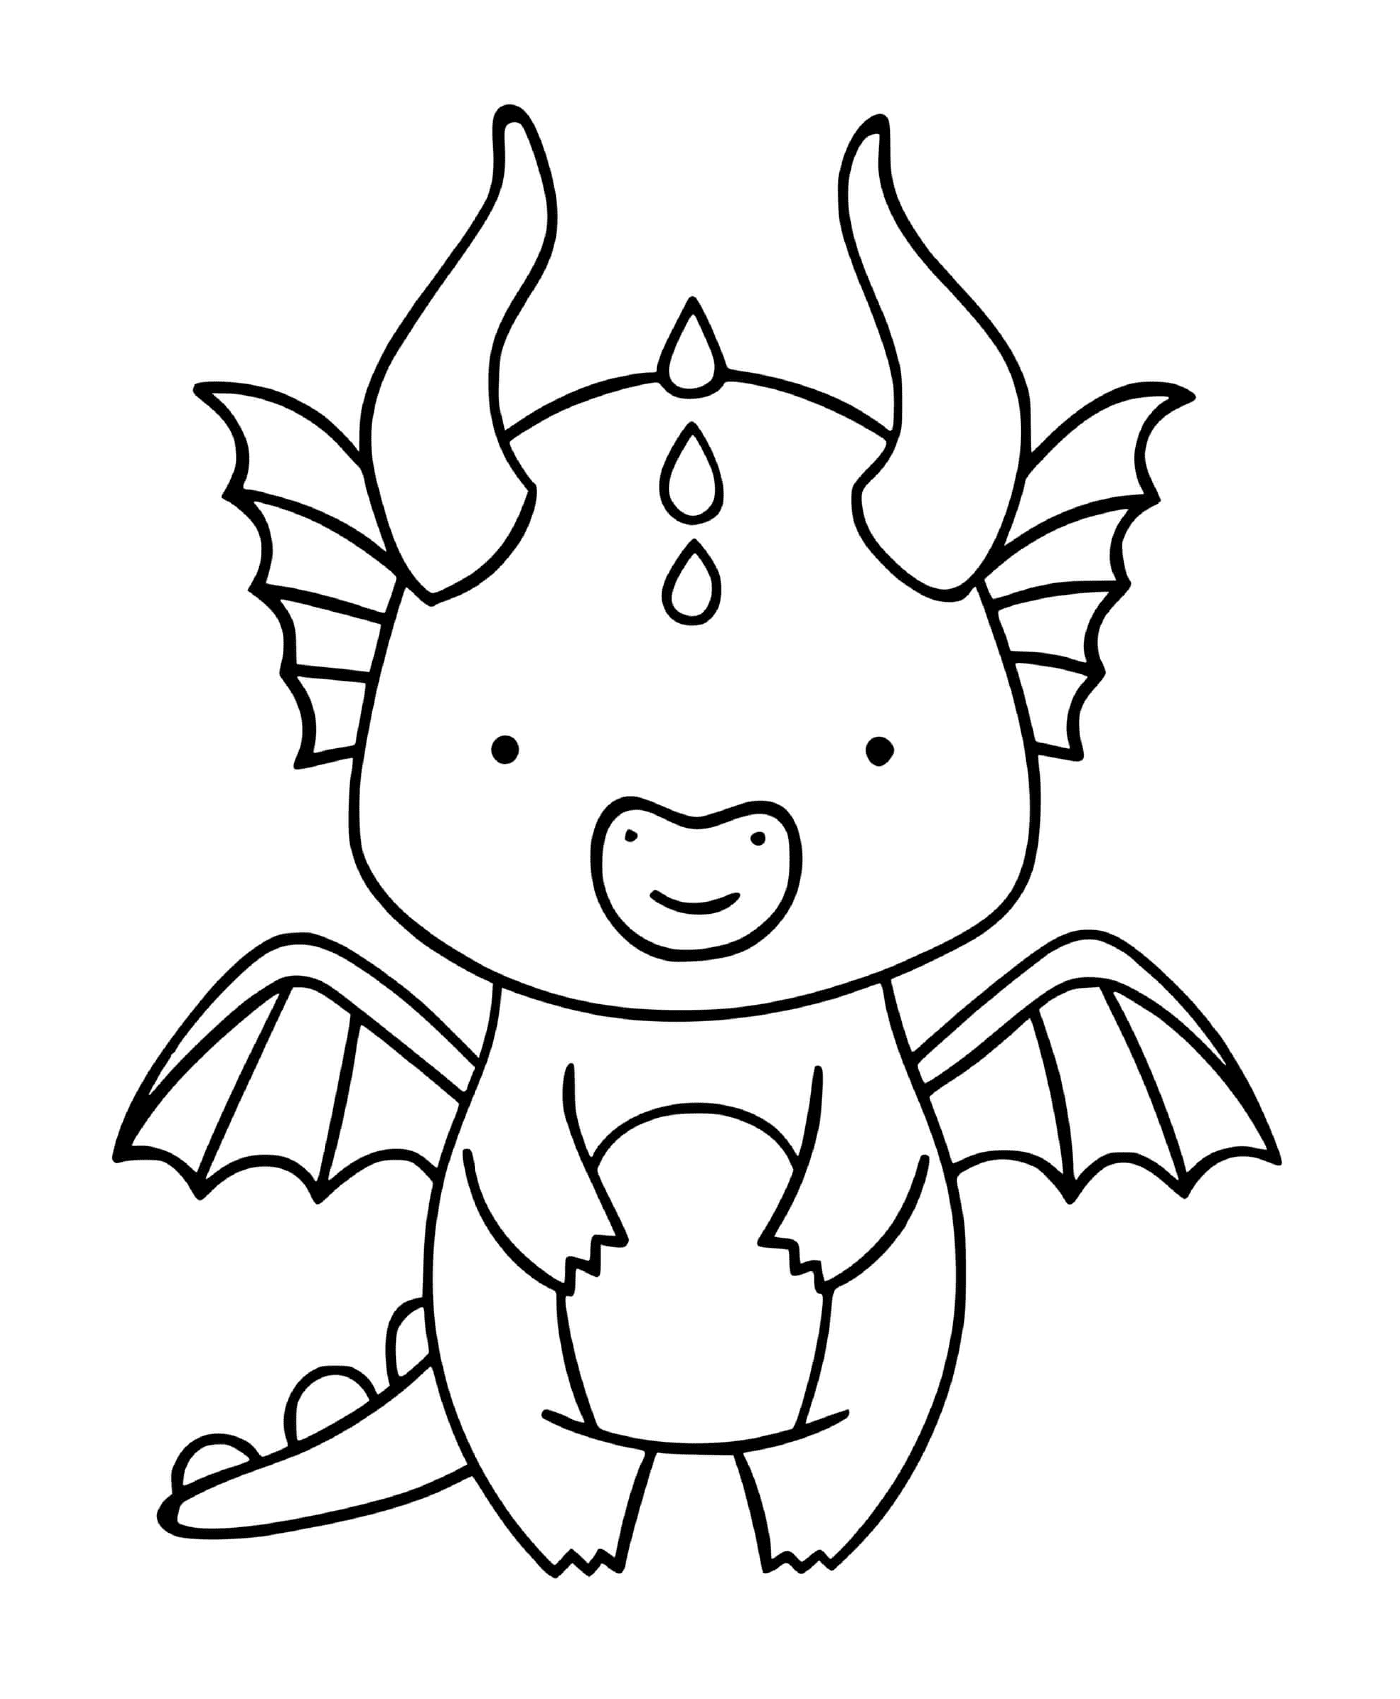 coloriage dragon facile maternelle simple pour enfant